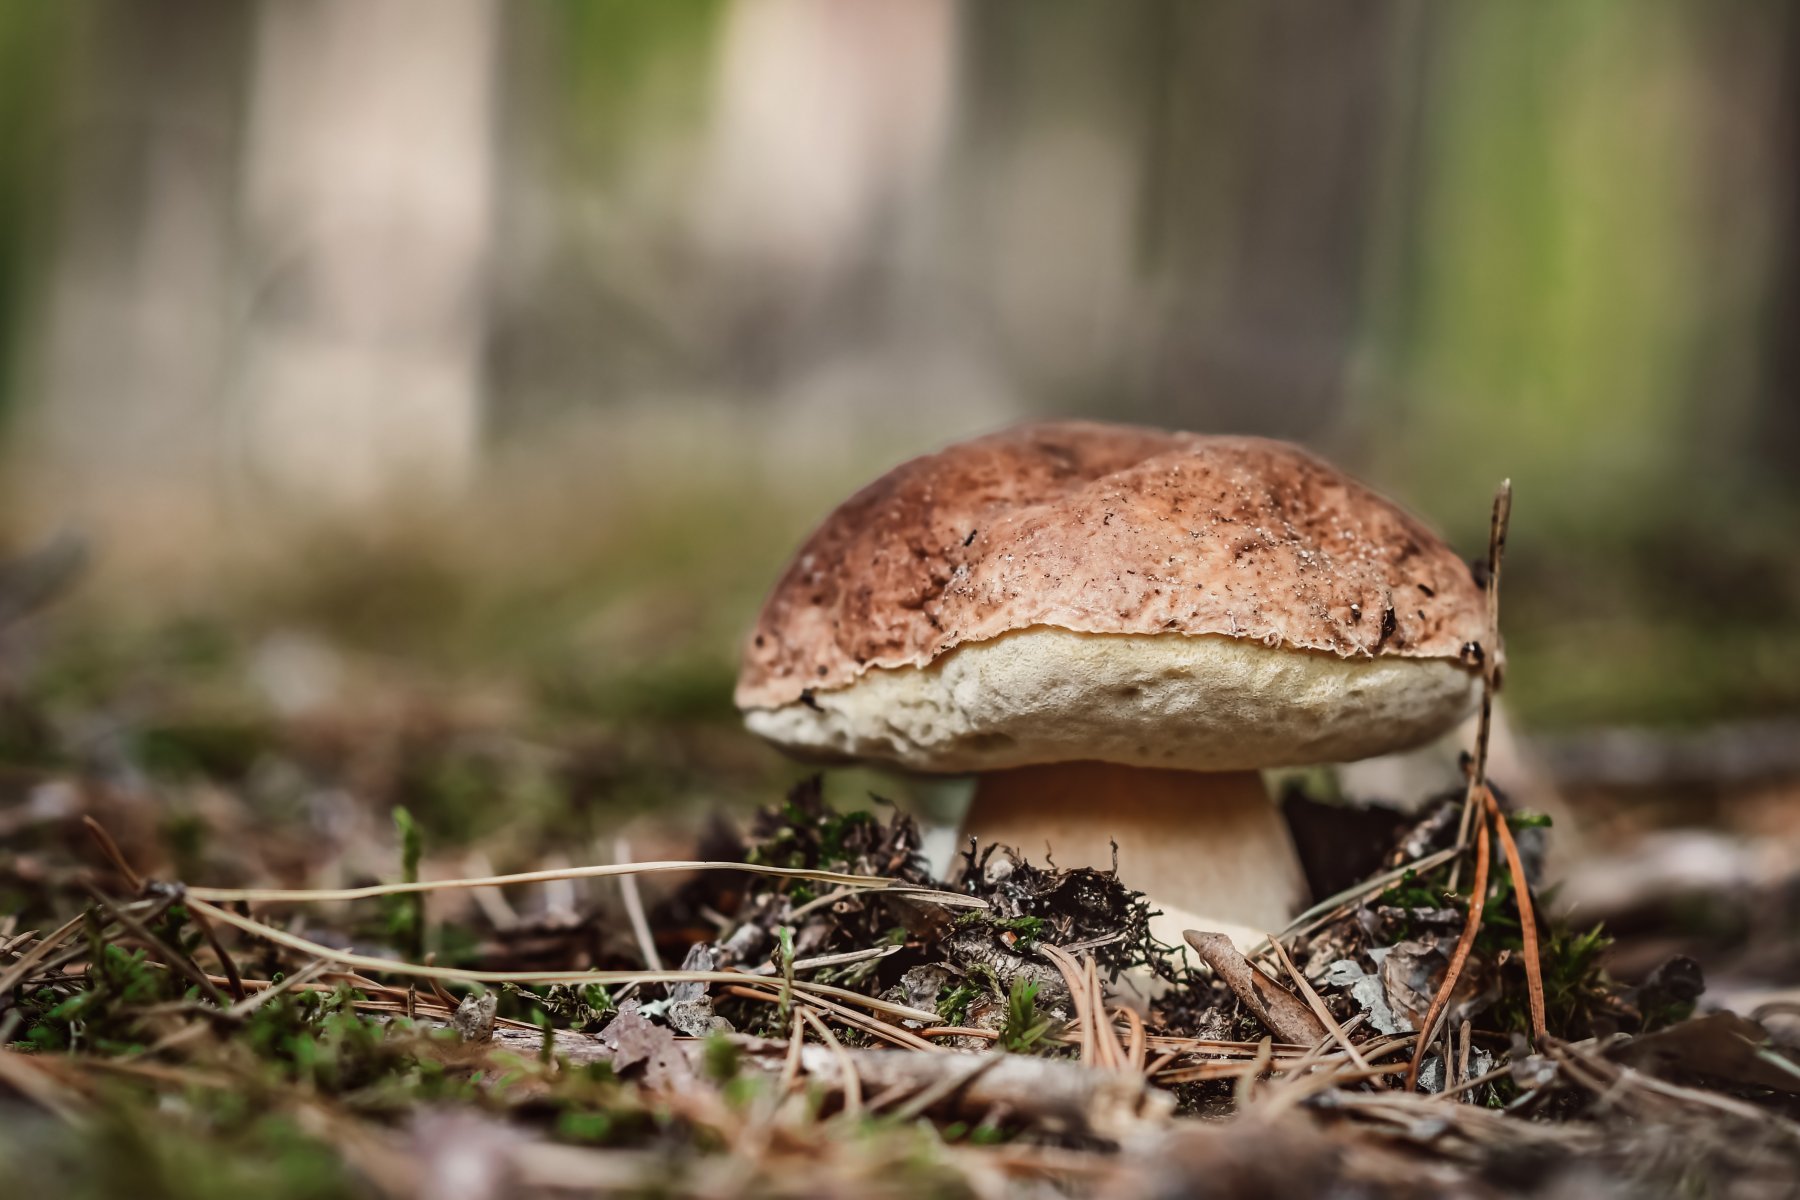 «С грибами все будет хорошо» - миколог пообещал любителям «тихой охоты» урожайный сезон